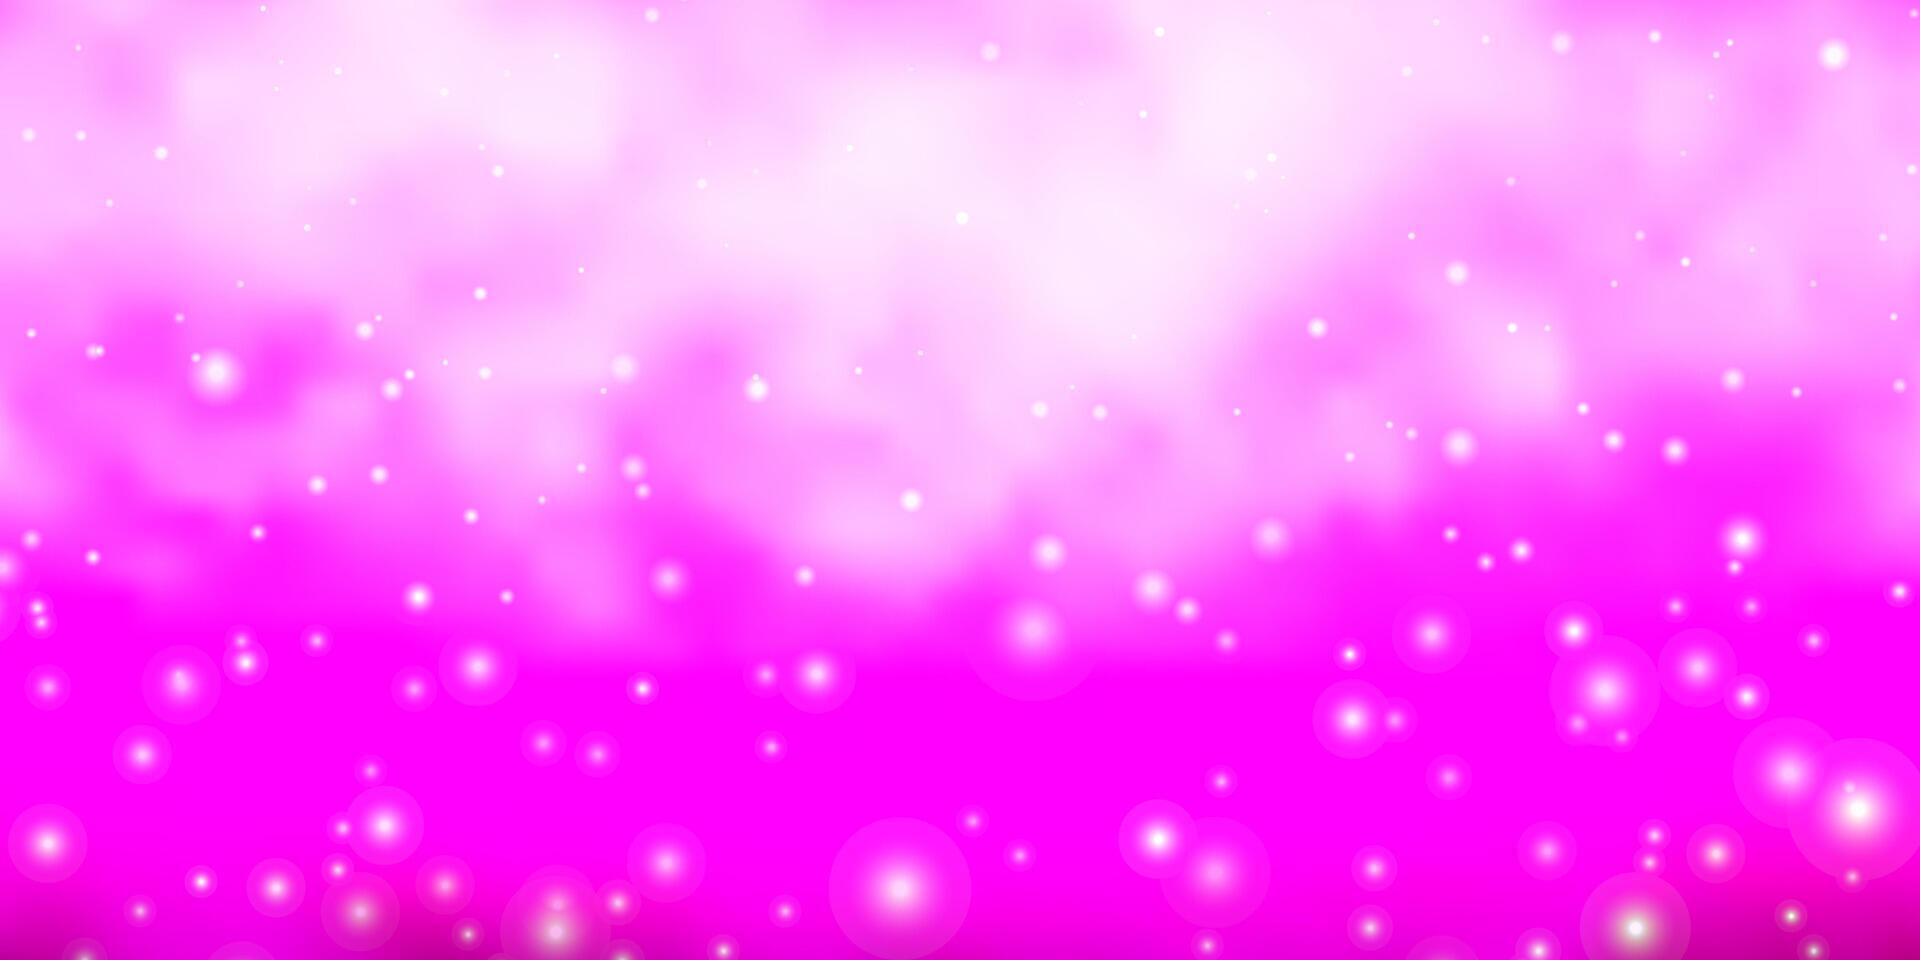 Fondo de vector violeta, rosa claro con estrellas de colores.